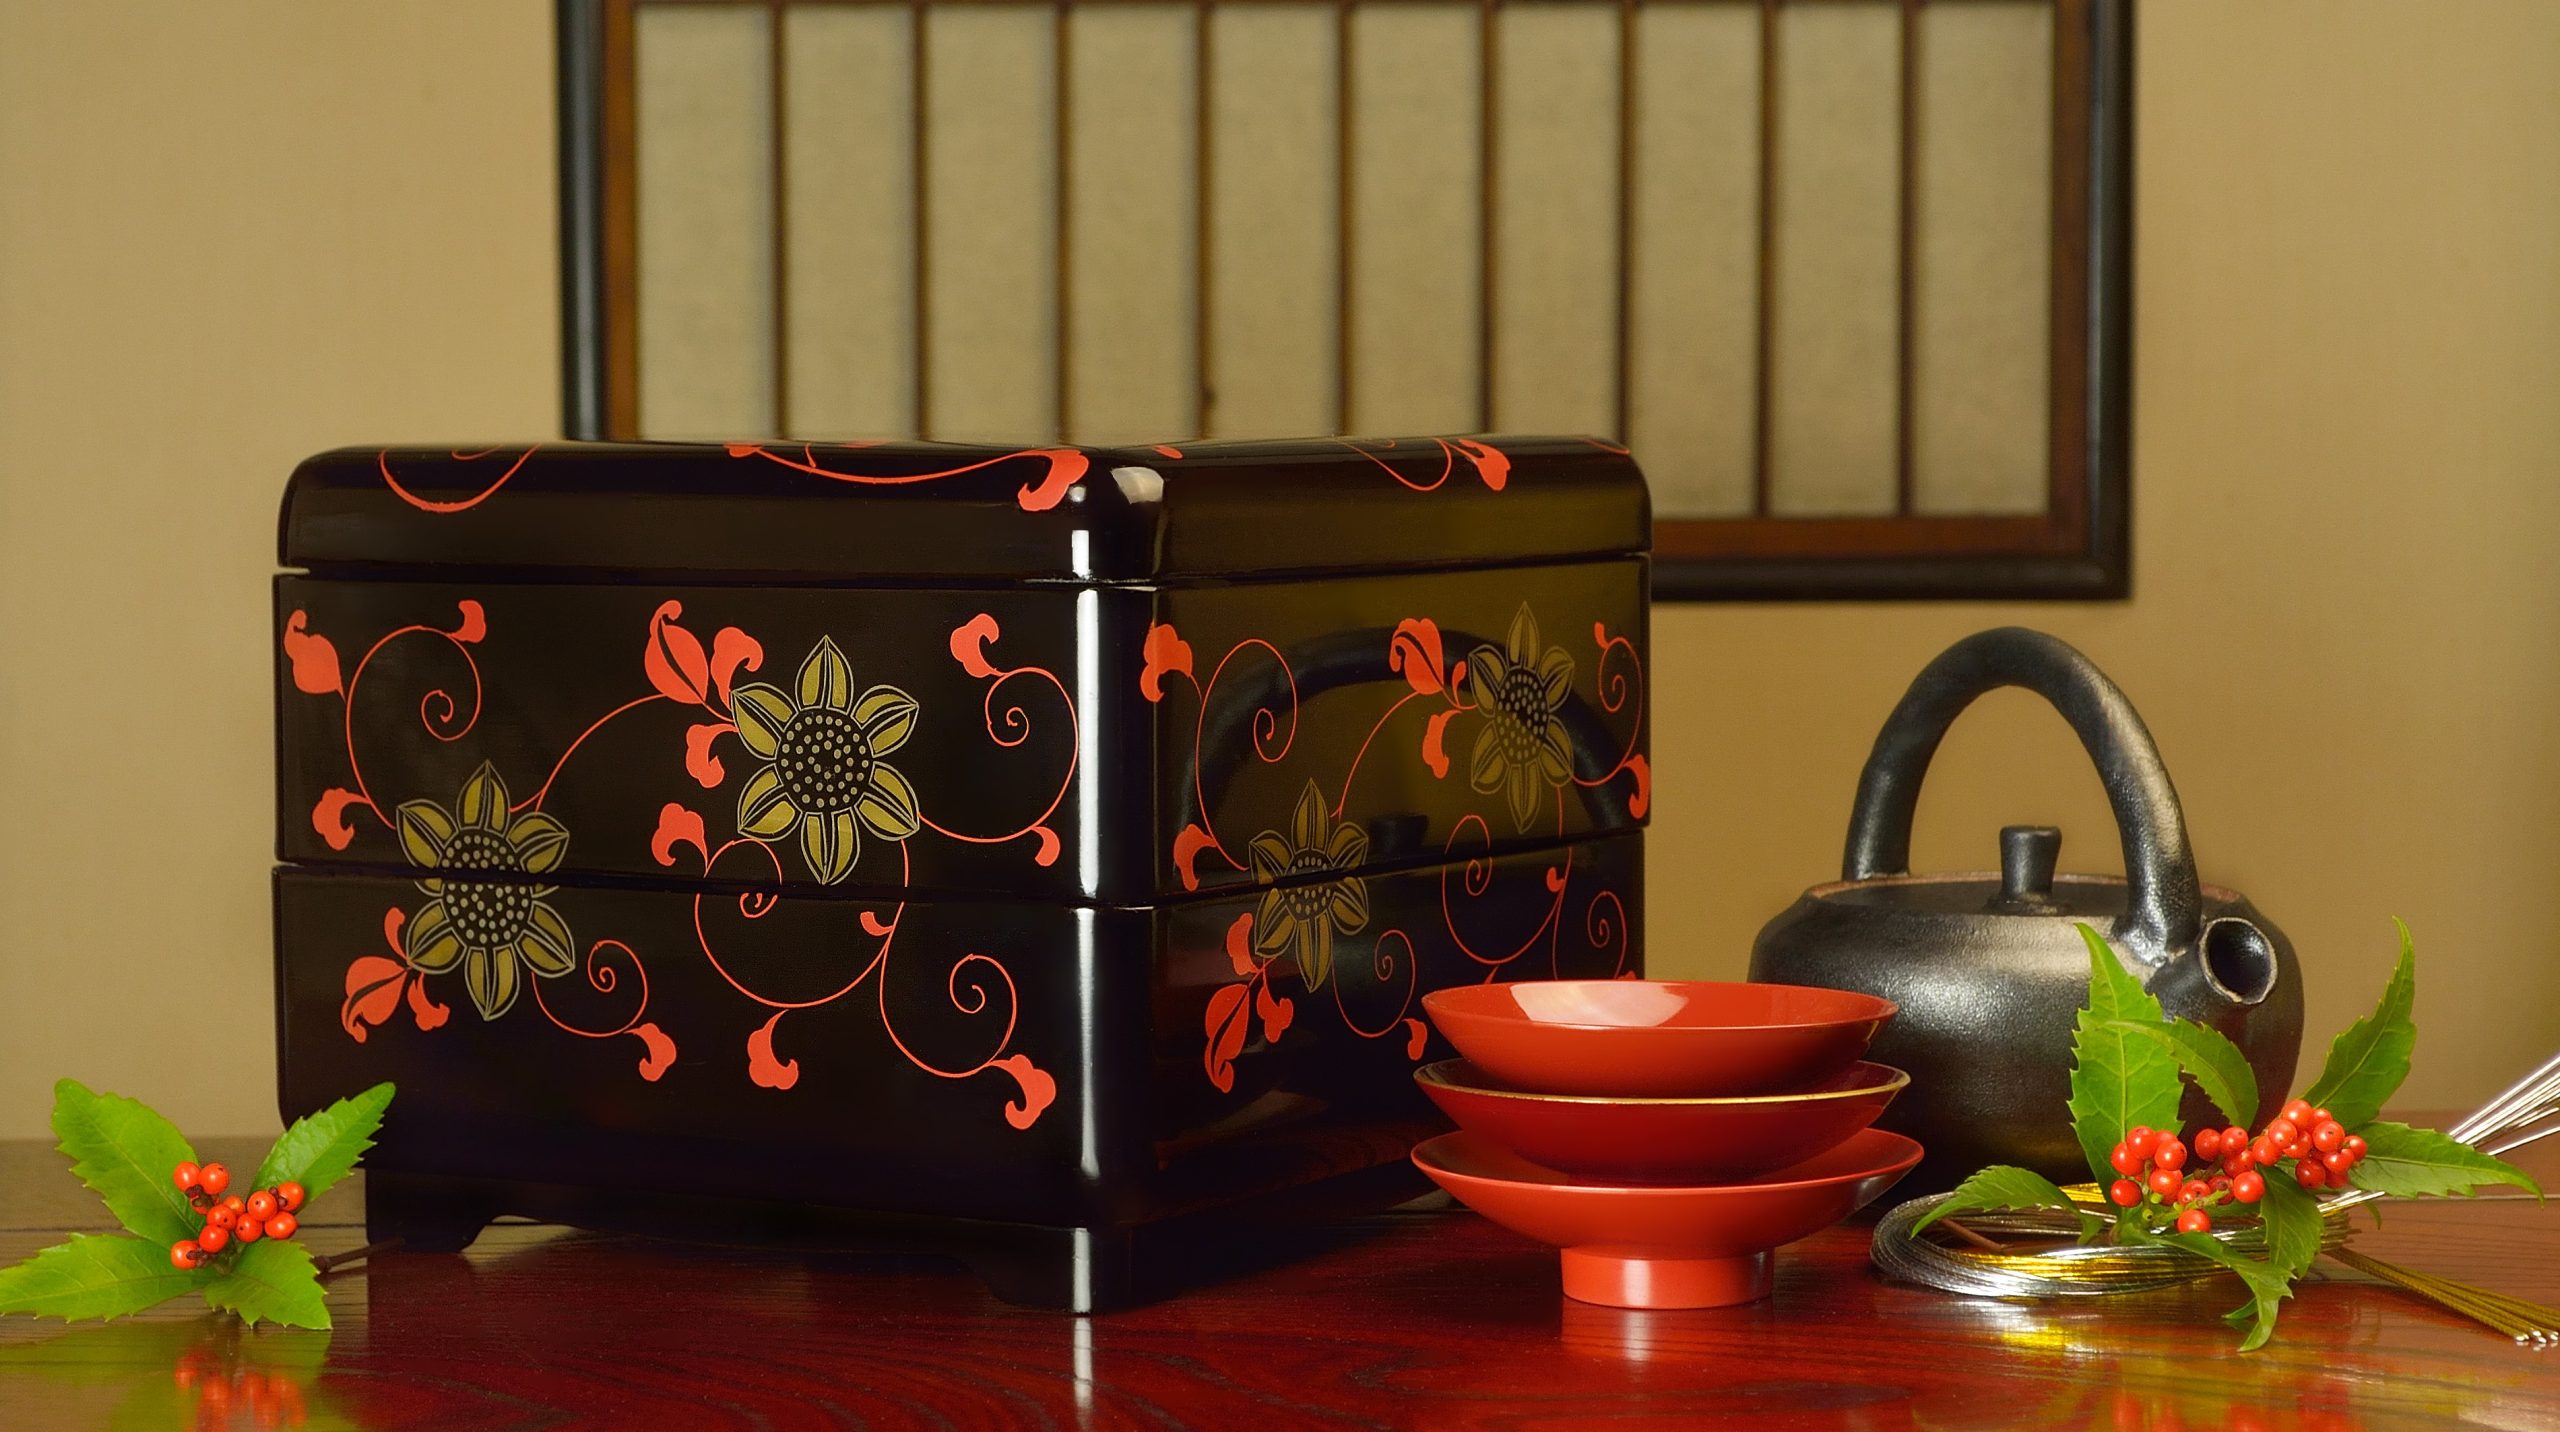 【文化の美を贈る】外国人が喜ぶ日本の伝統工芸品ギフトおすすめ10選～